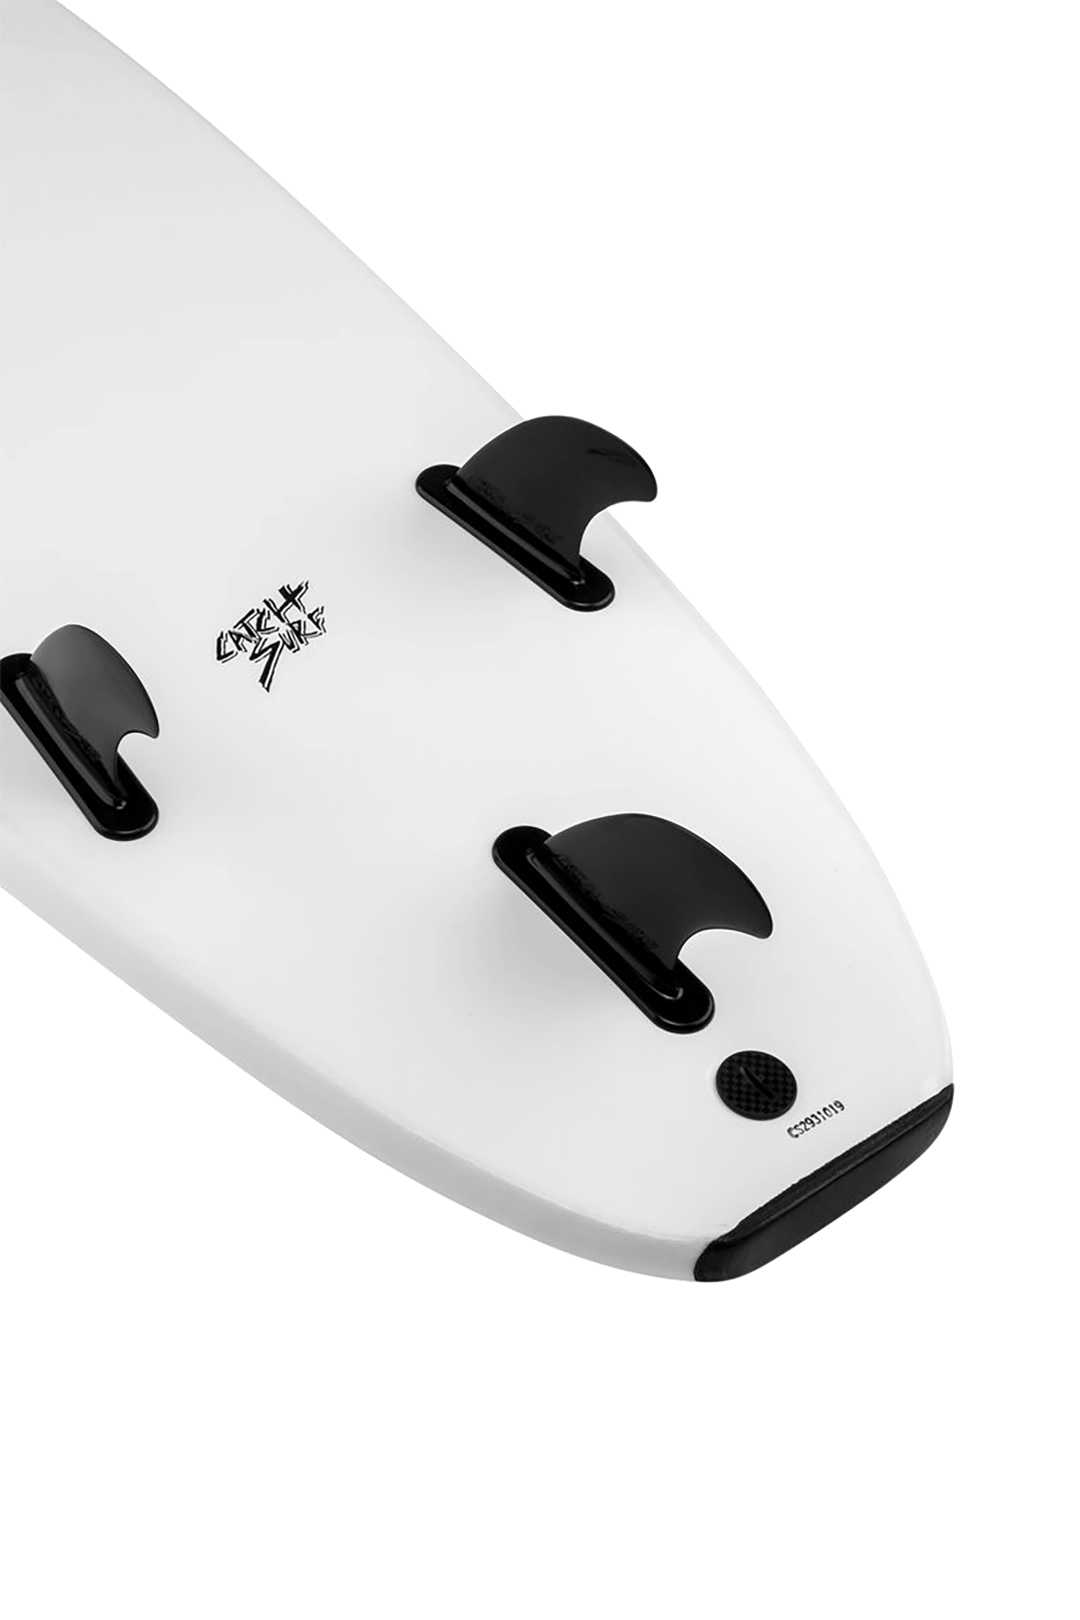 9.0 CATCH SURF BLANK SERIES - WHITE SURFBOARD CATCH SURF   